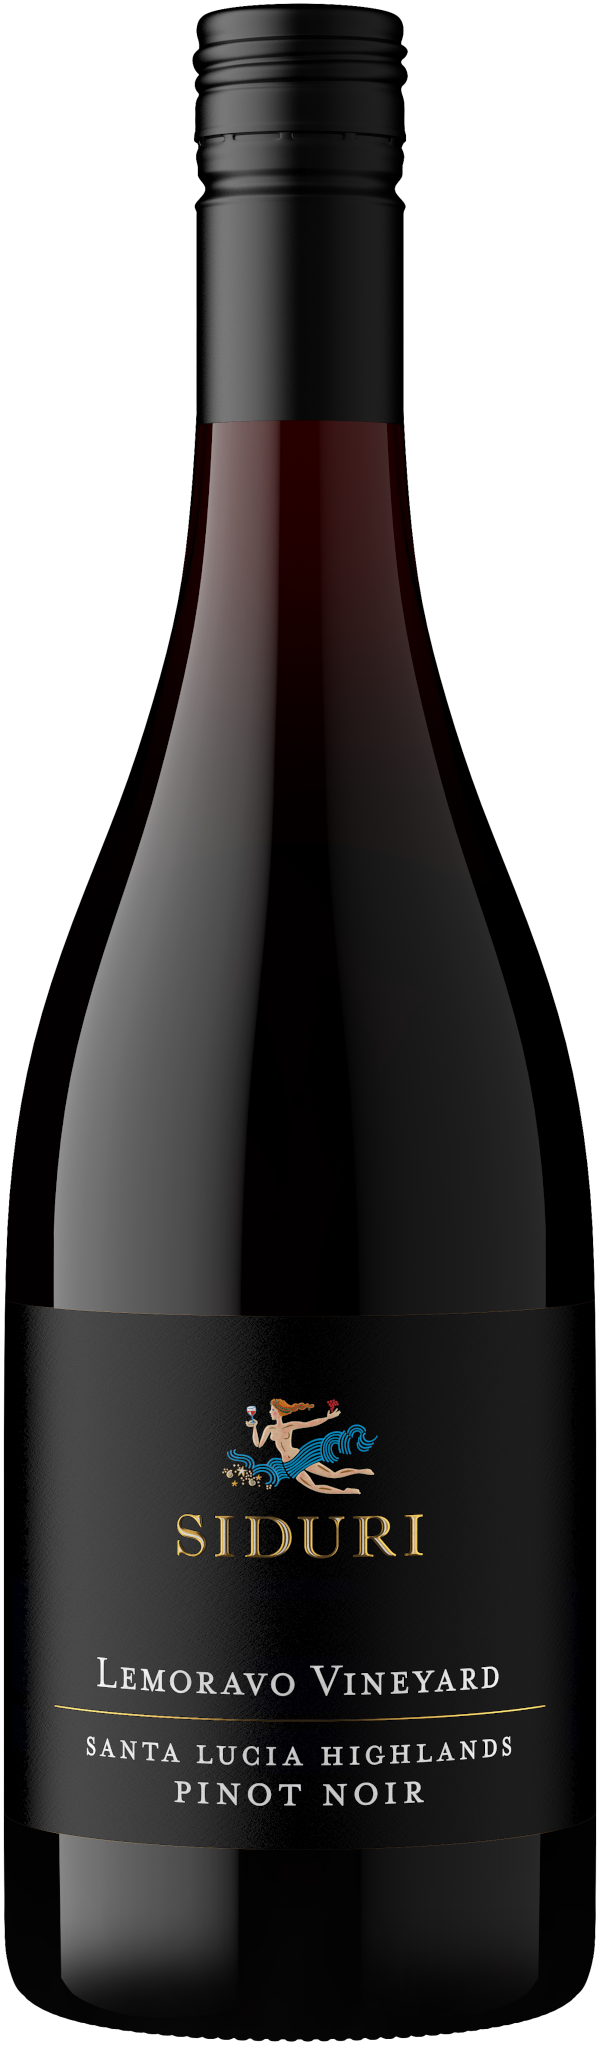 Siduri Pinot Noir Lemoravo